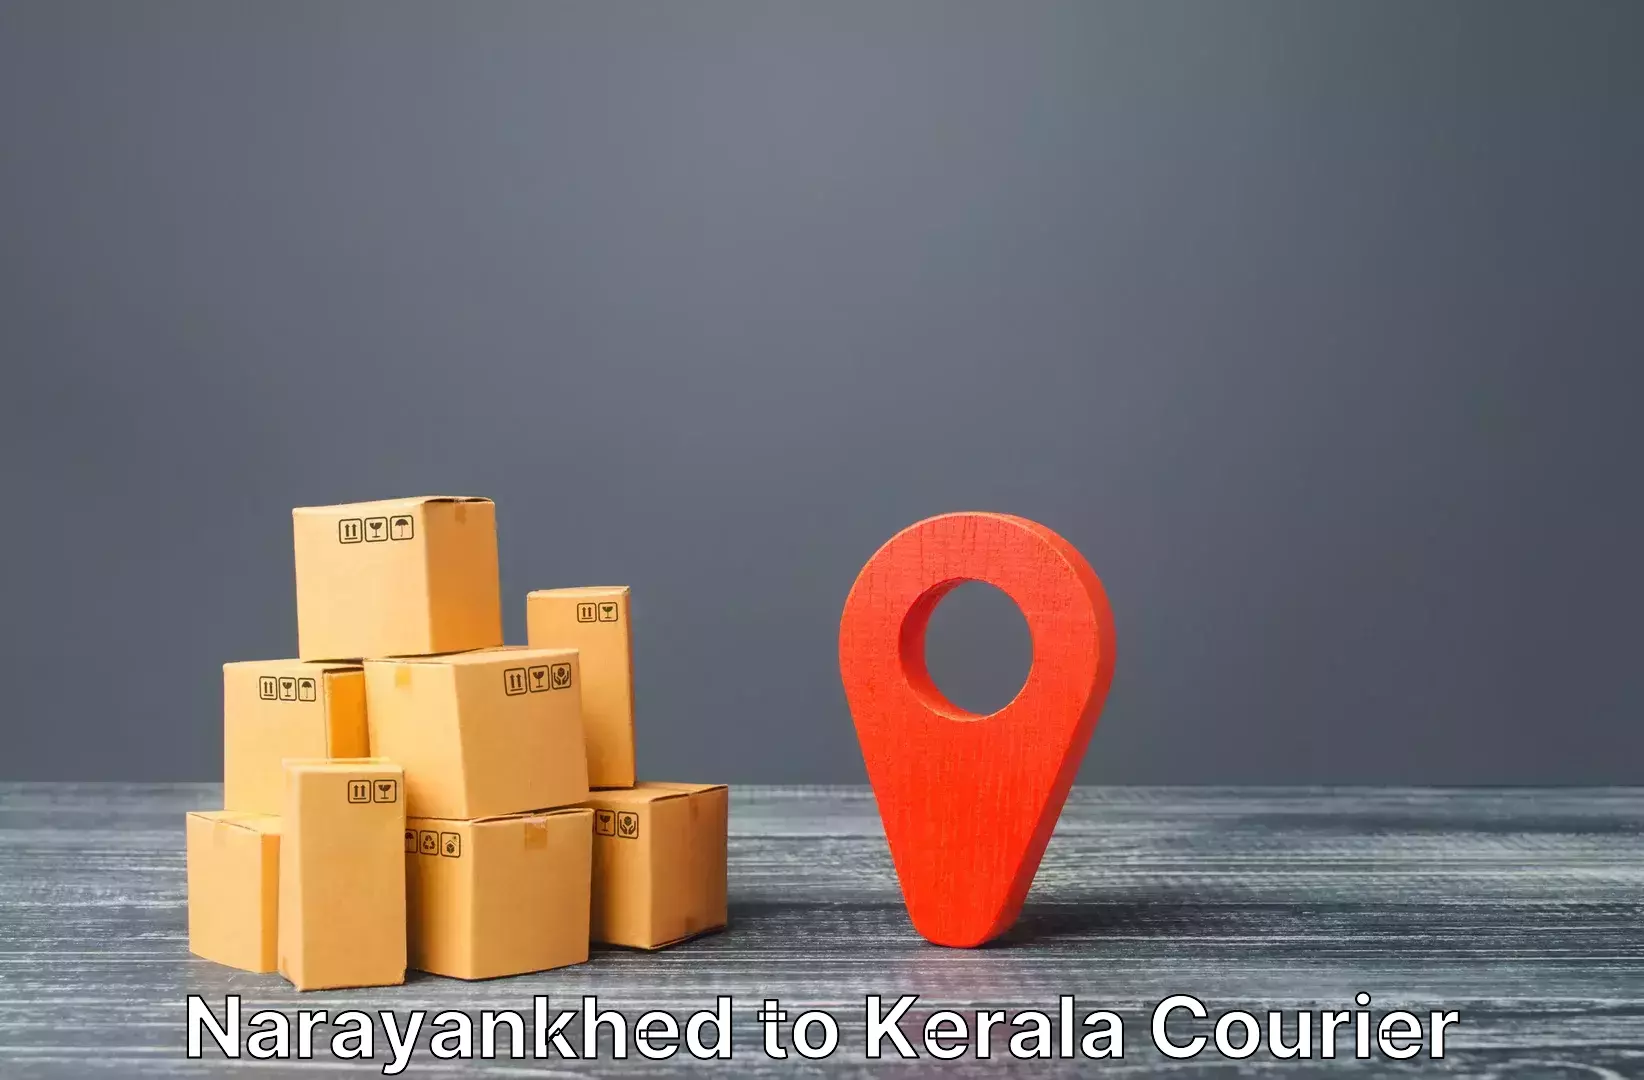 Baggage transport logistics Narayankhed to Kiliyanthara